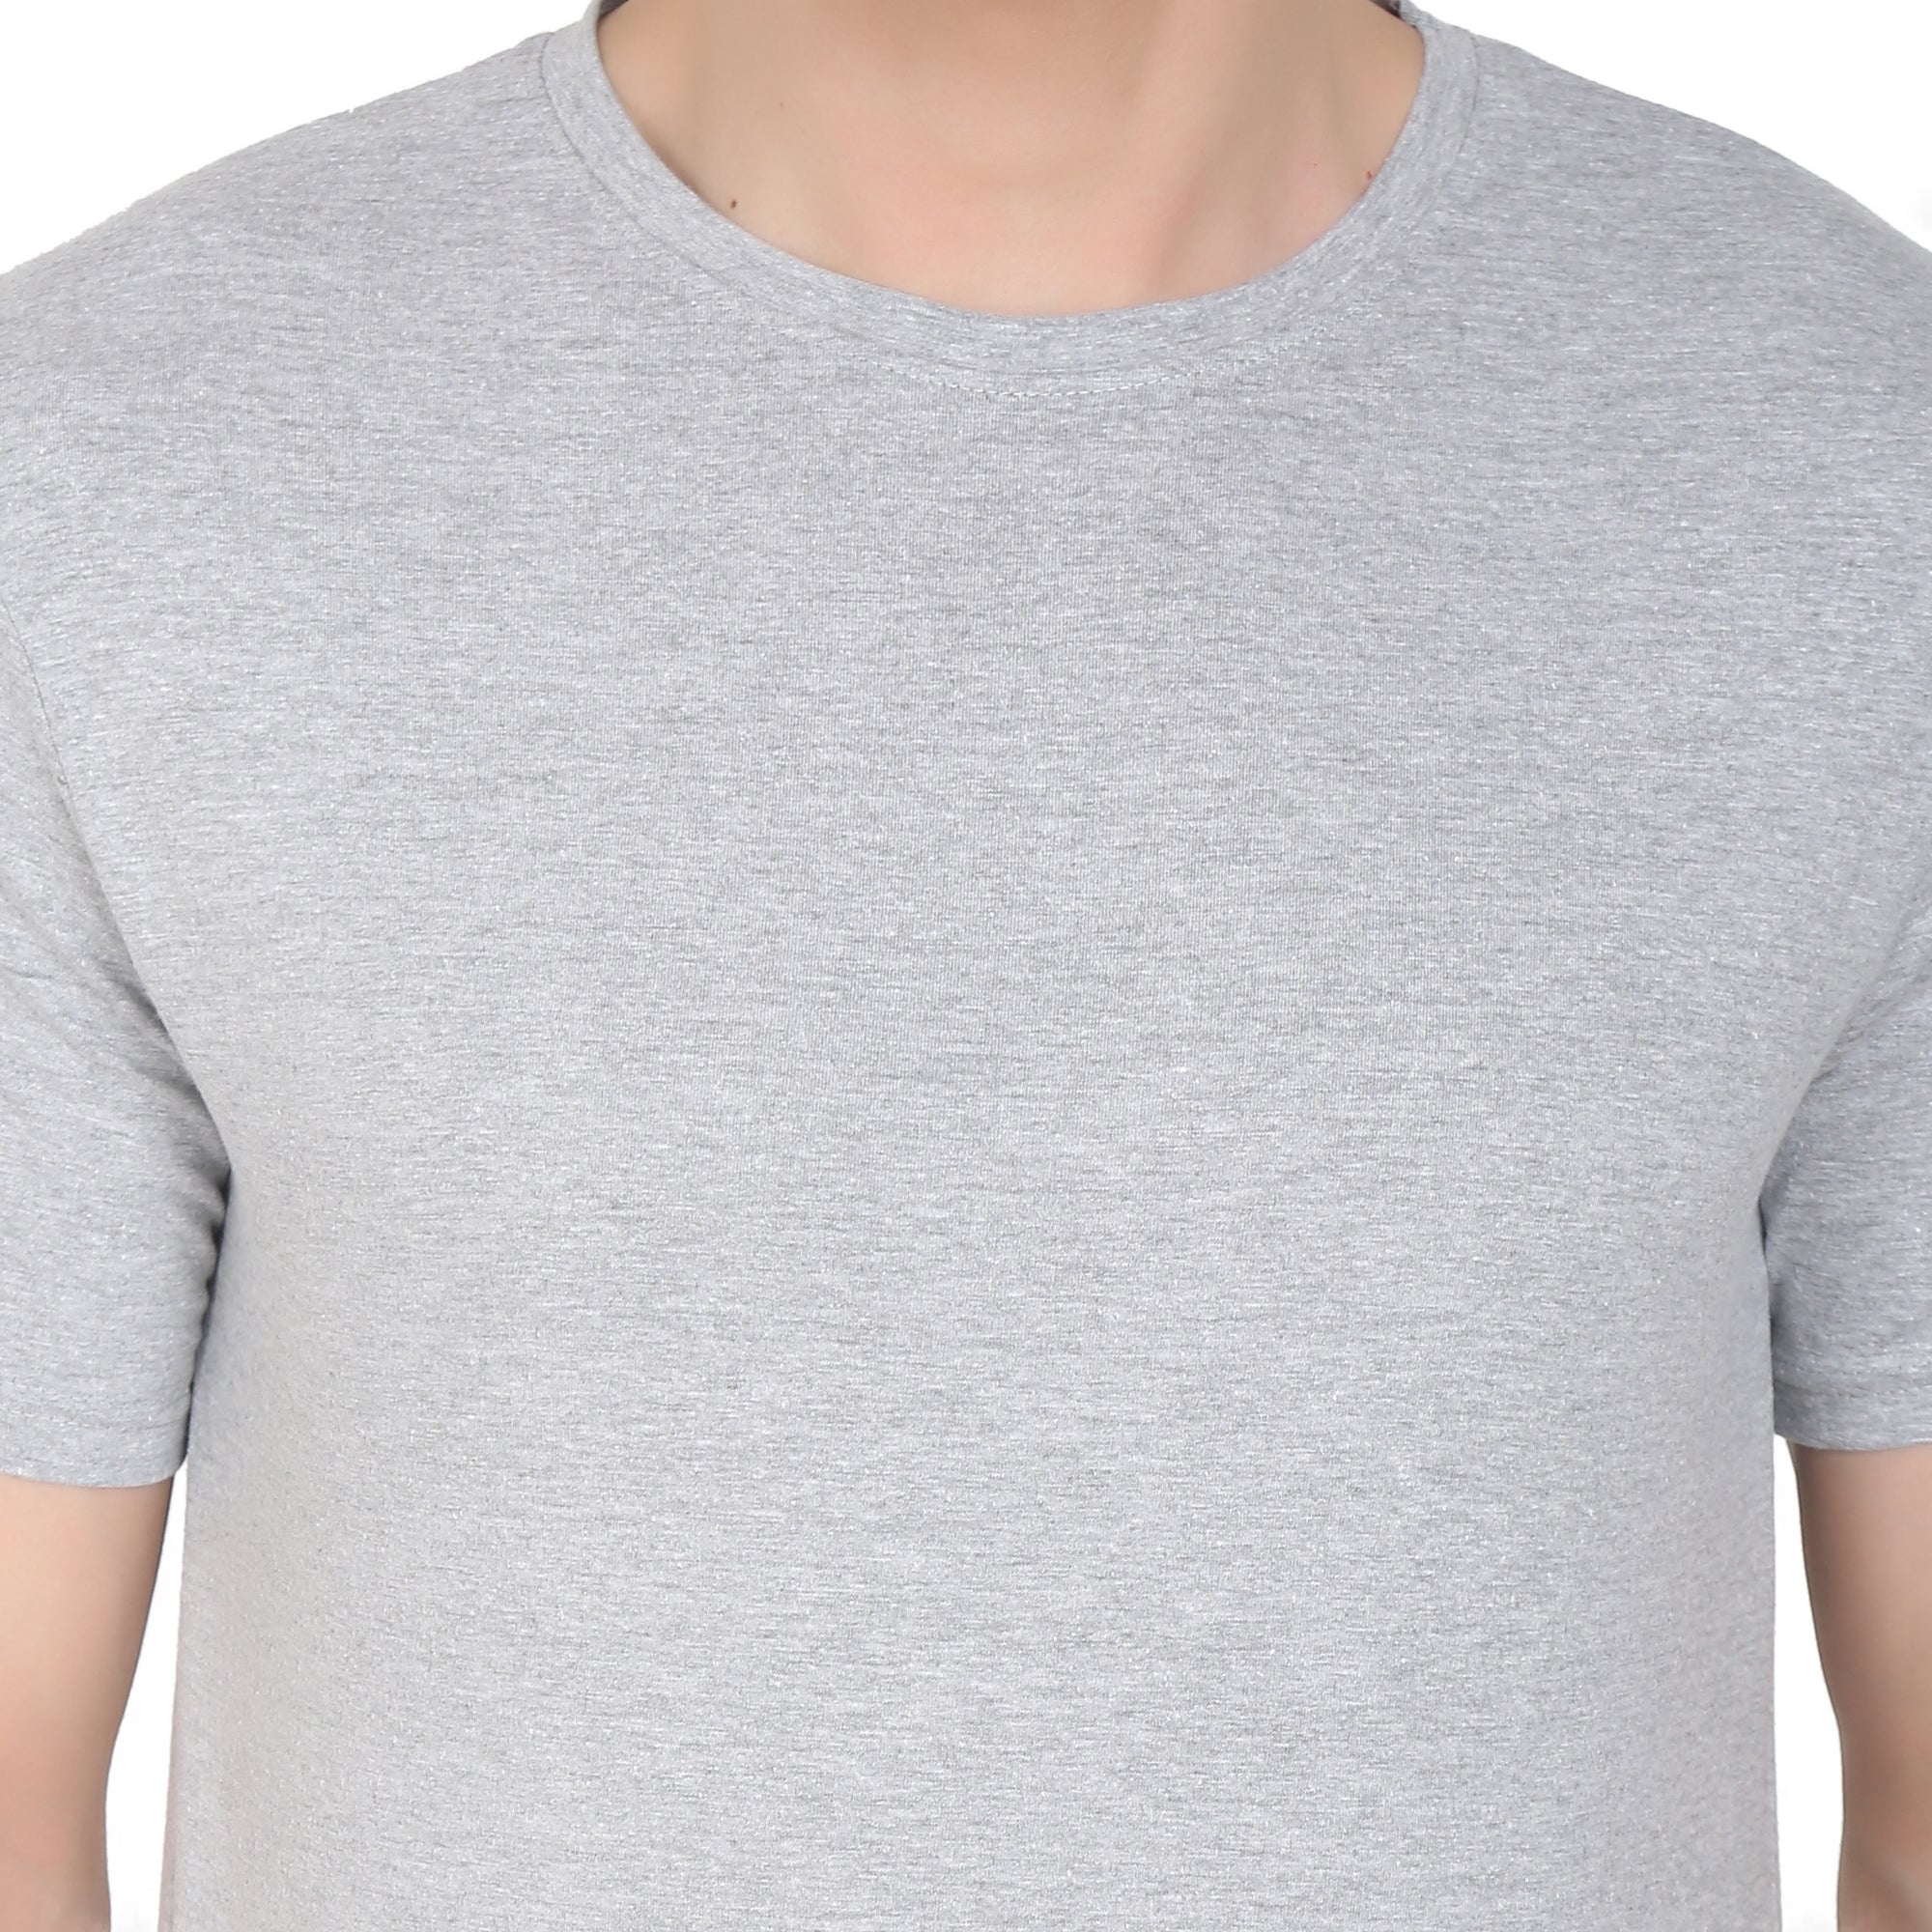 Men Four Way Stretch Cotton Plain T-shirt - Grey Colour